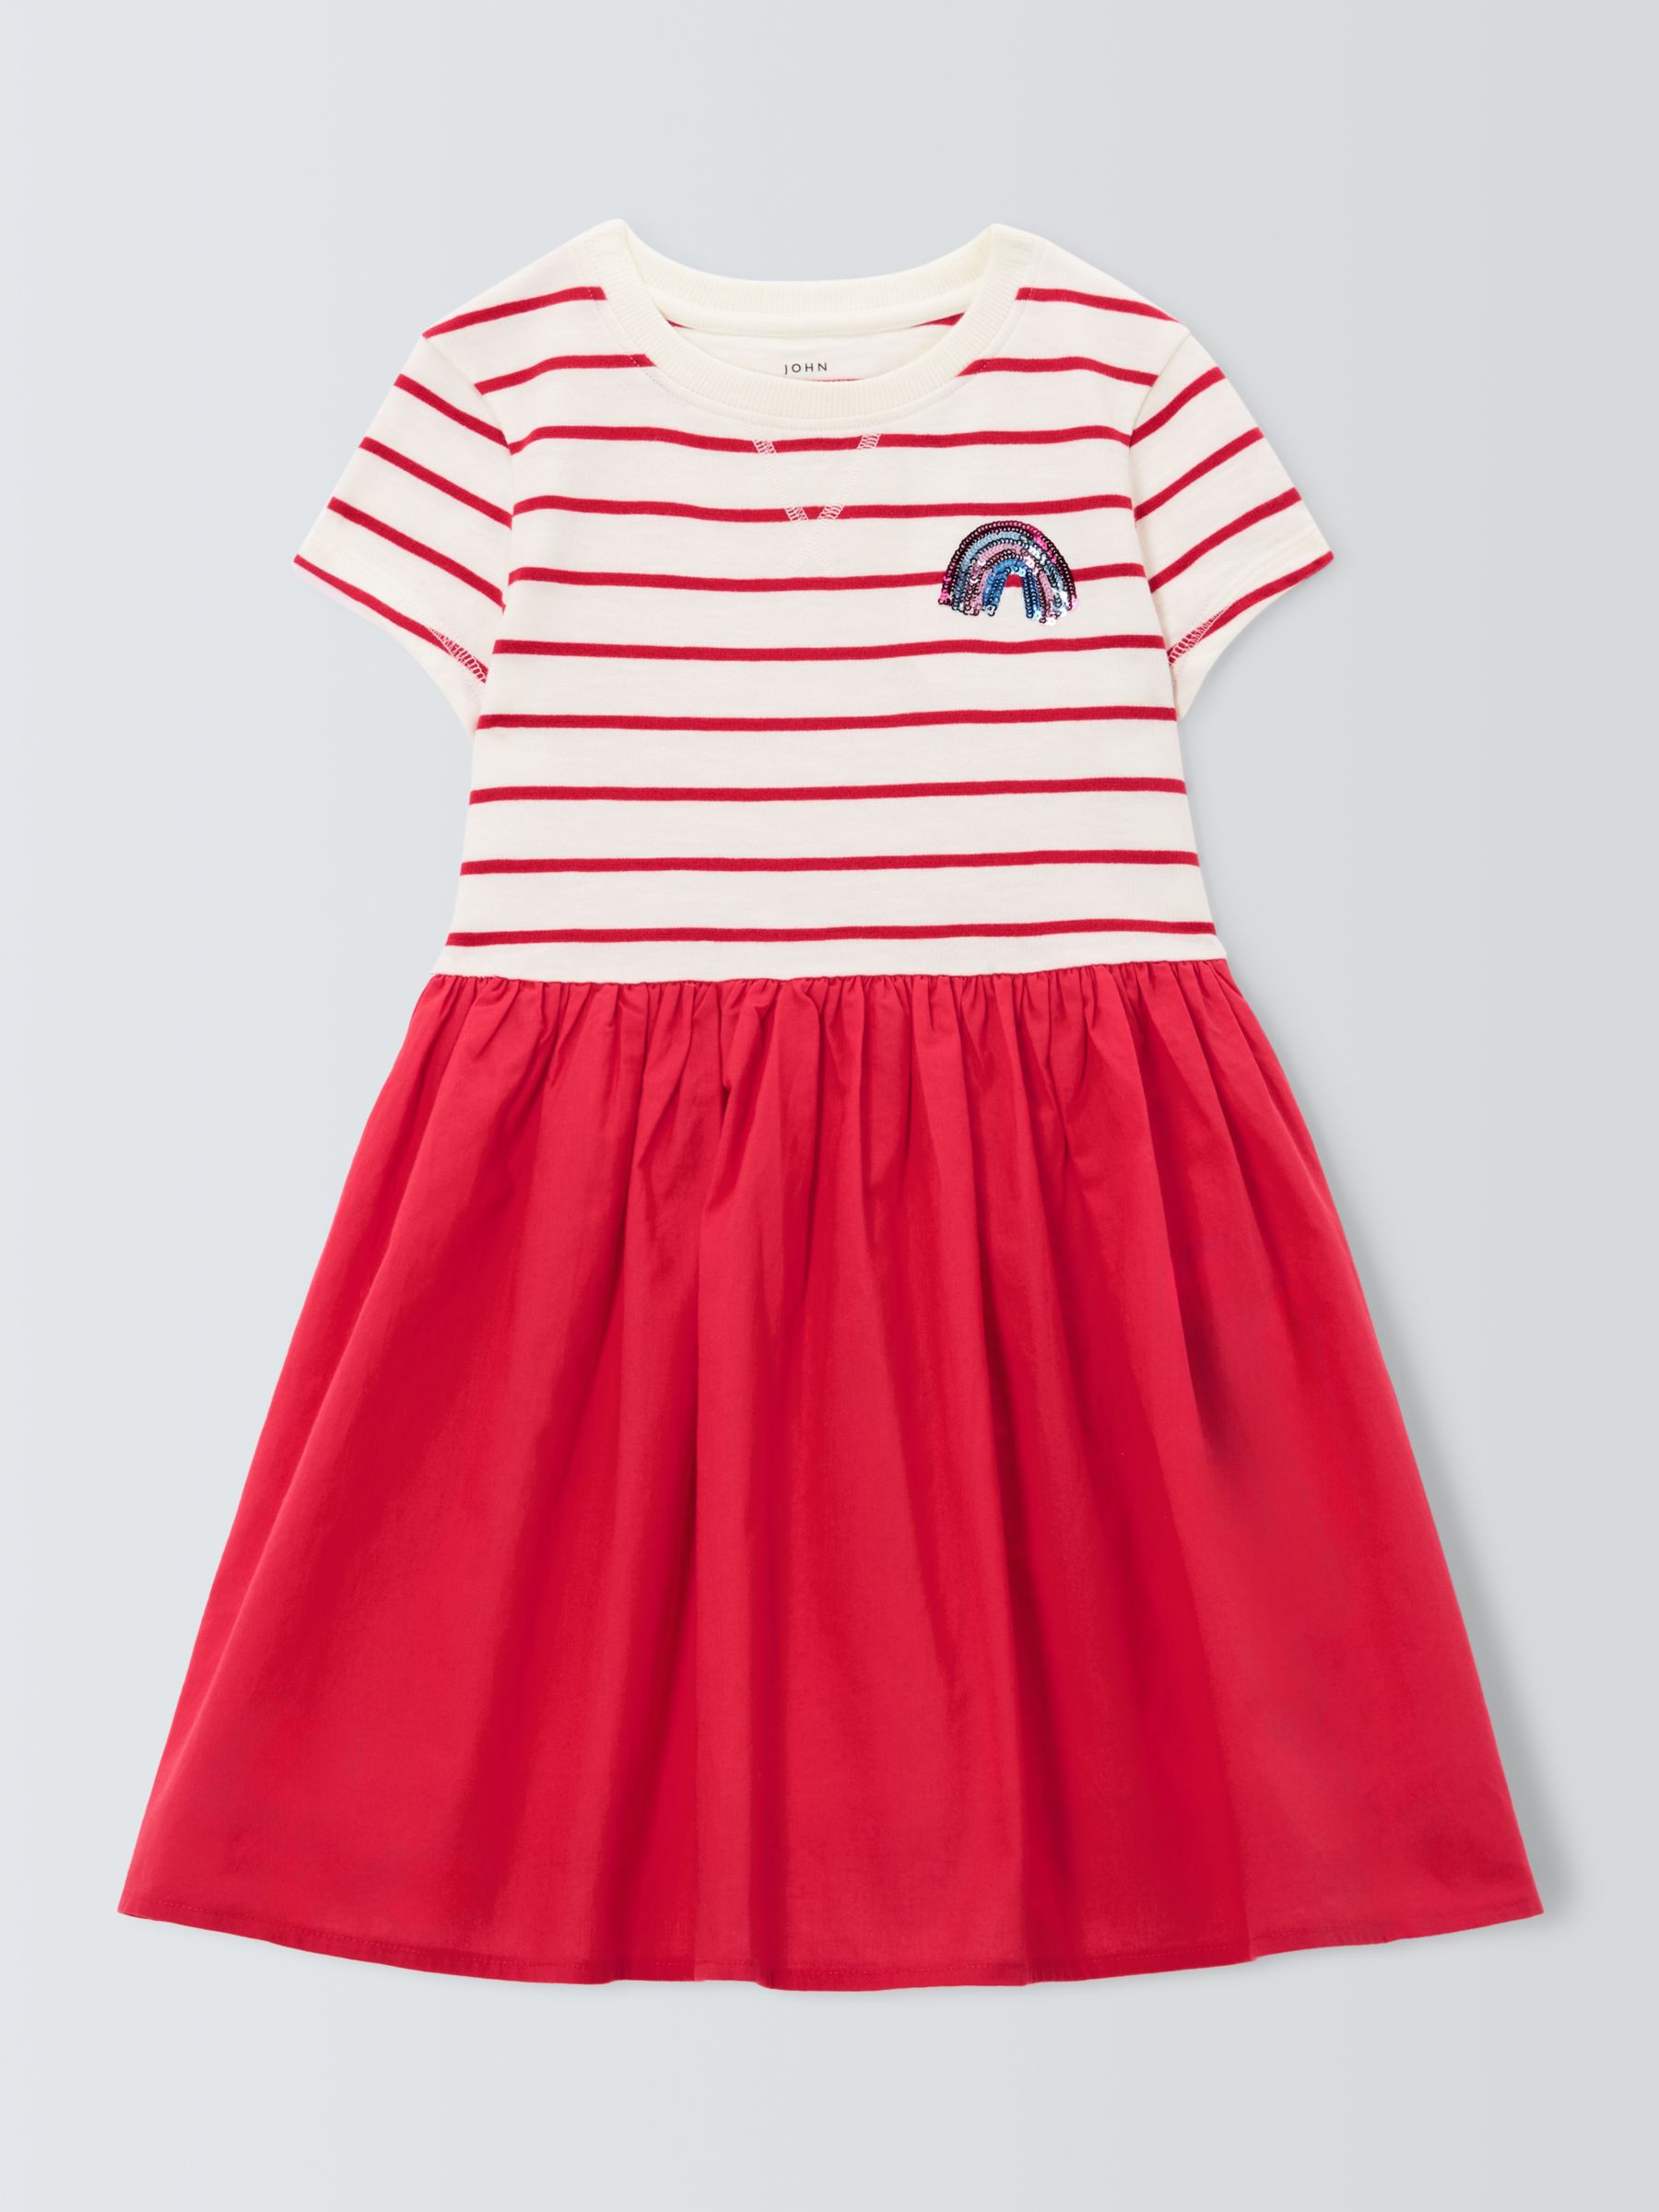 John Lewis Kids' Half Stripe Dress, Red/White, 10 years